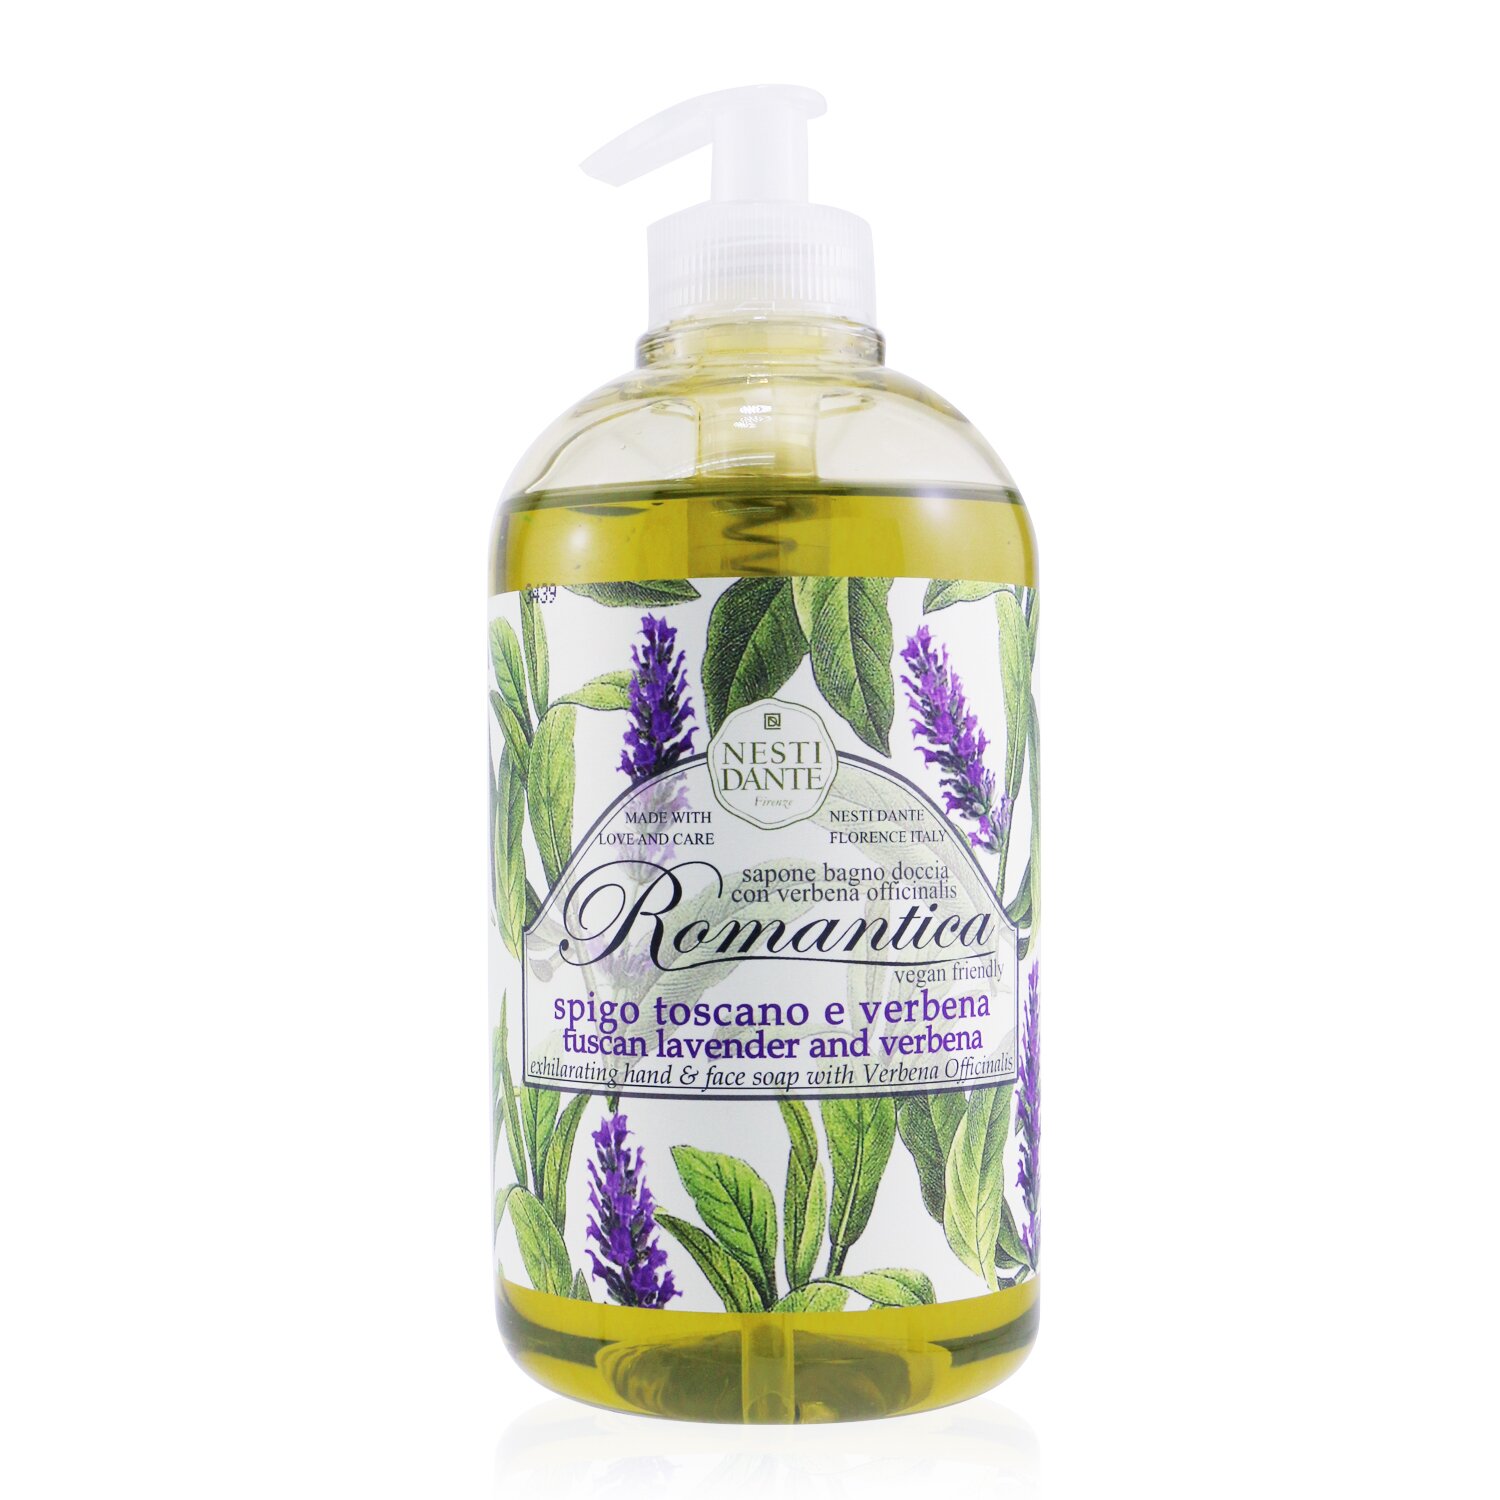 那是堤 Nesti Dante - Romantica Exhilarating Hand & Face香皂 With Verbena Officinalis - Lavender And Verbena